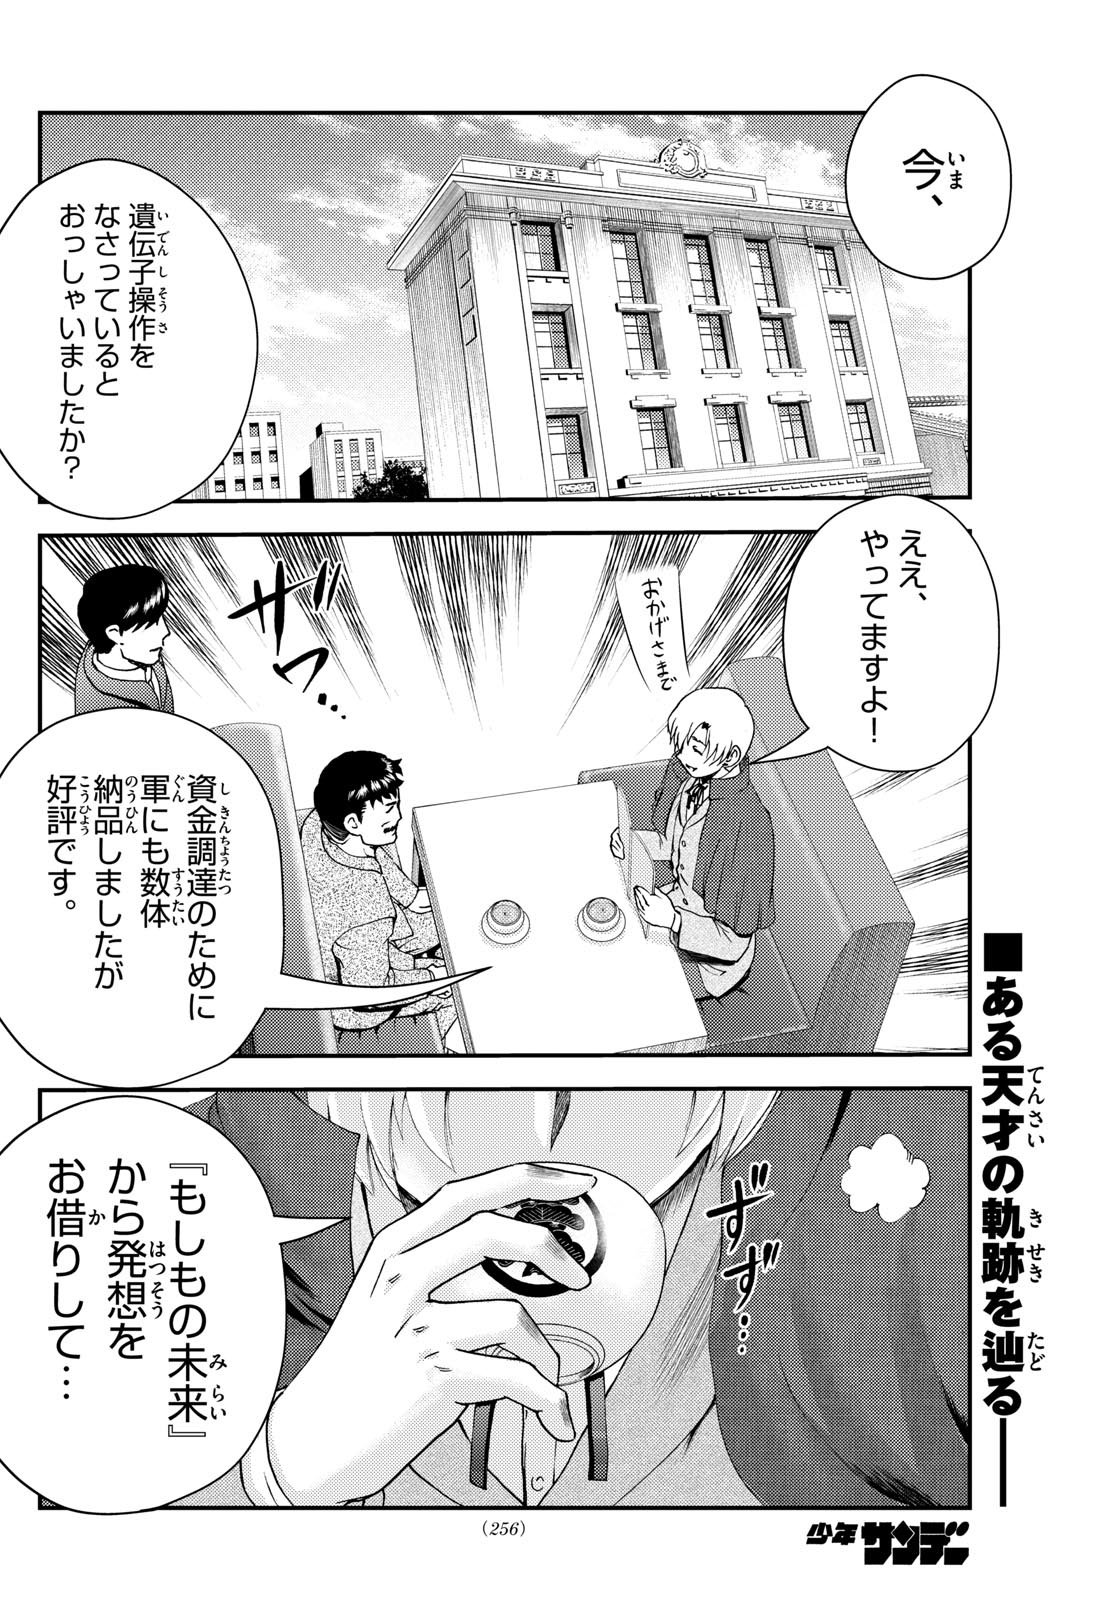 Kimi wa 008 - Chapter 279 - Page 2